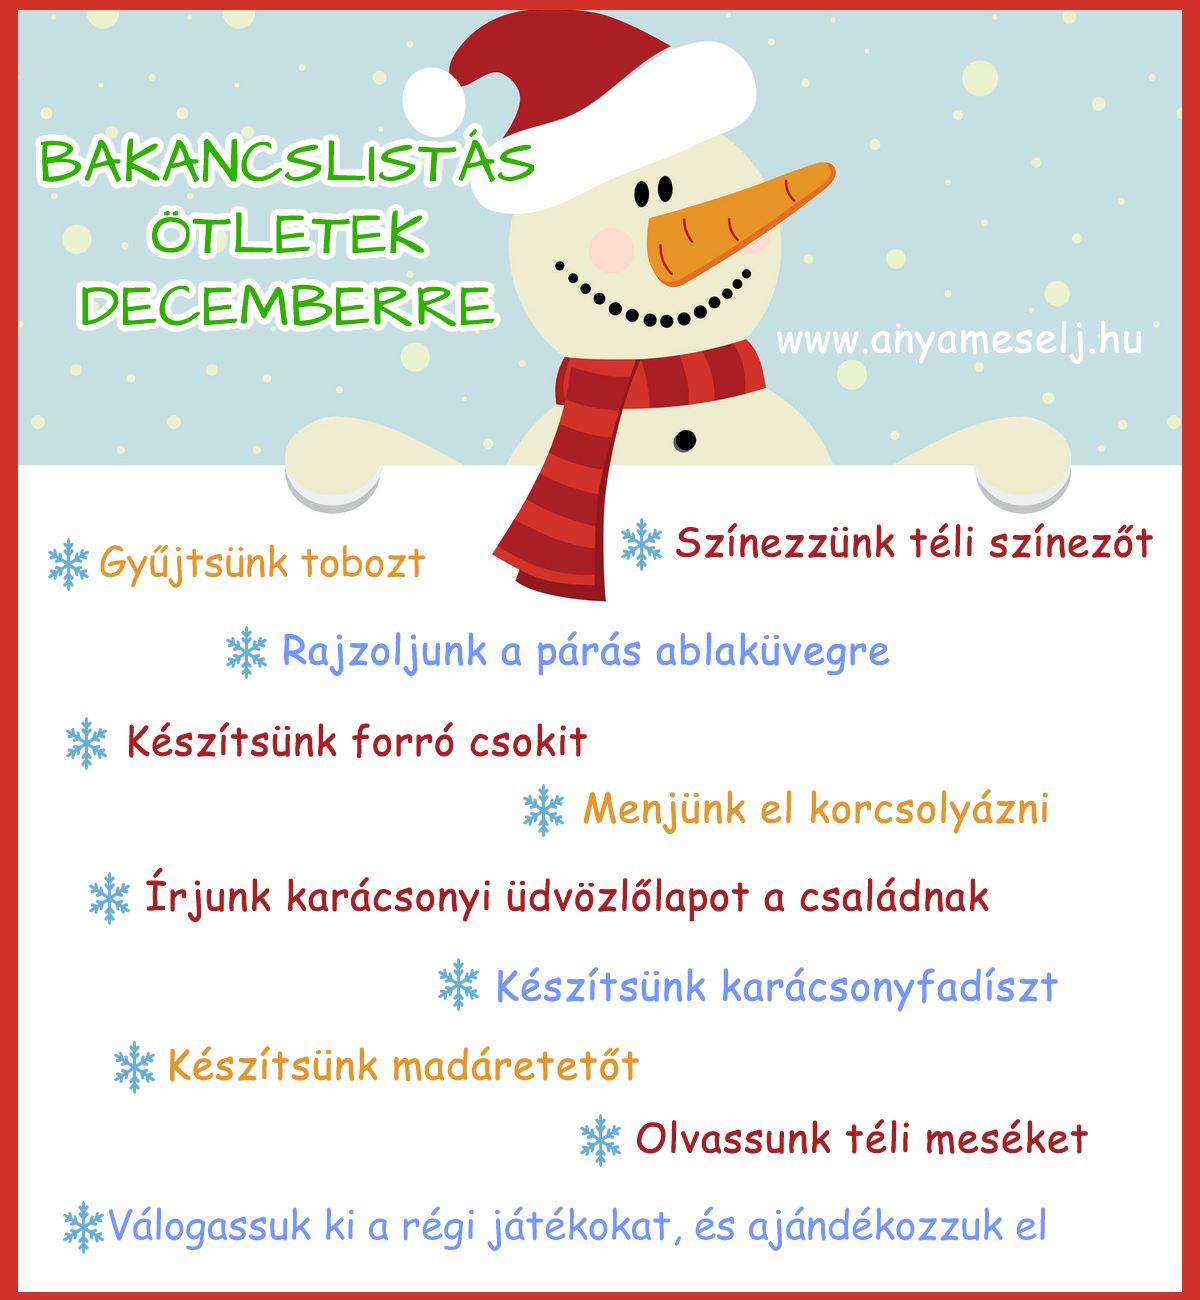 ❄📝💟 Bakancslistás ötletek decemberre 🙂

#bakancslista #december #tél #ötletek #gyerekkel #ünnepvárás #ovisoknak #anyamesélj